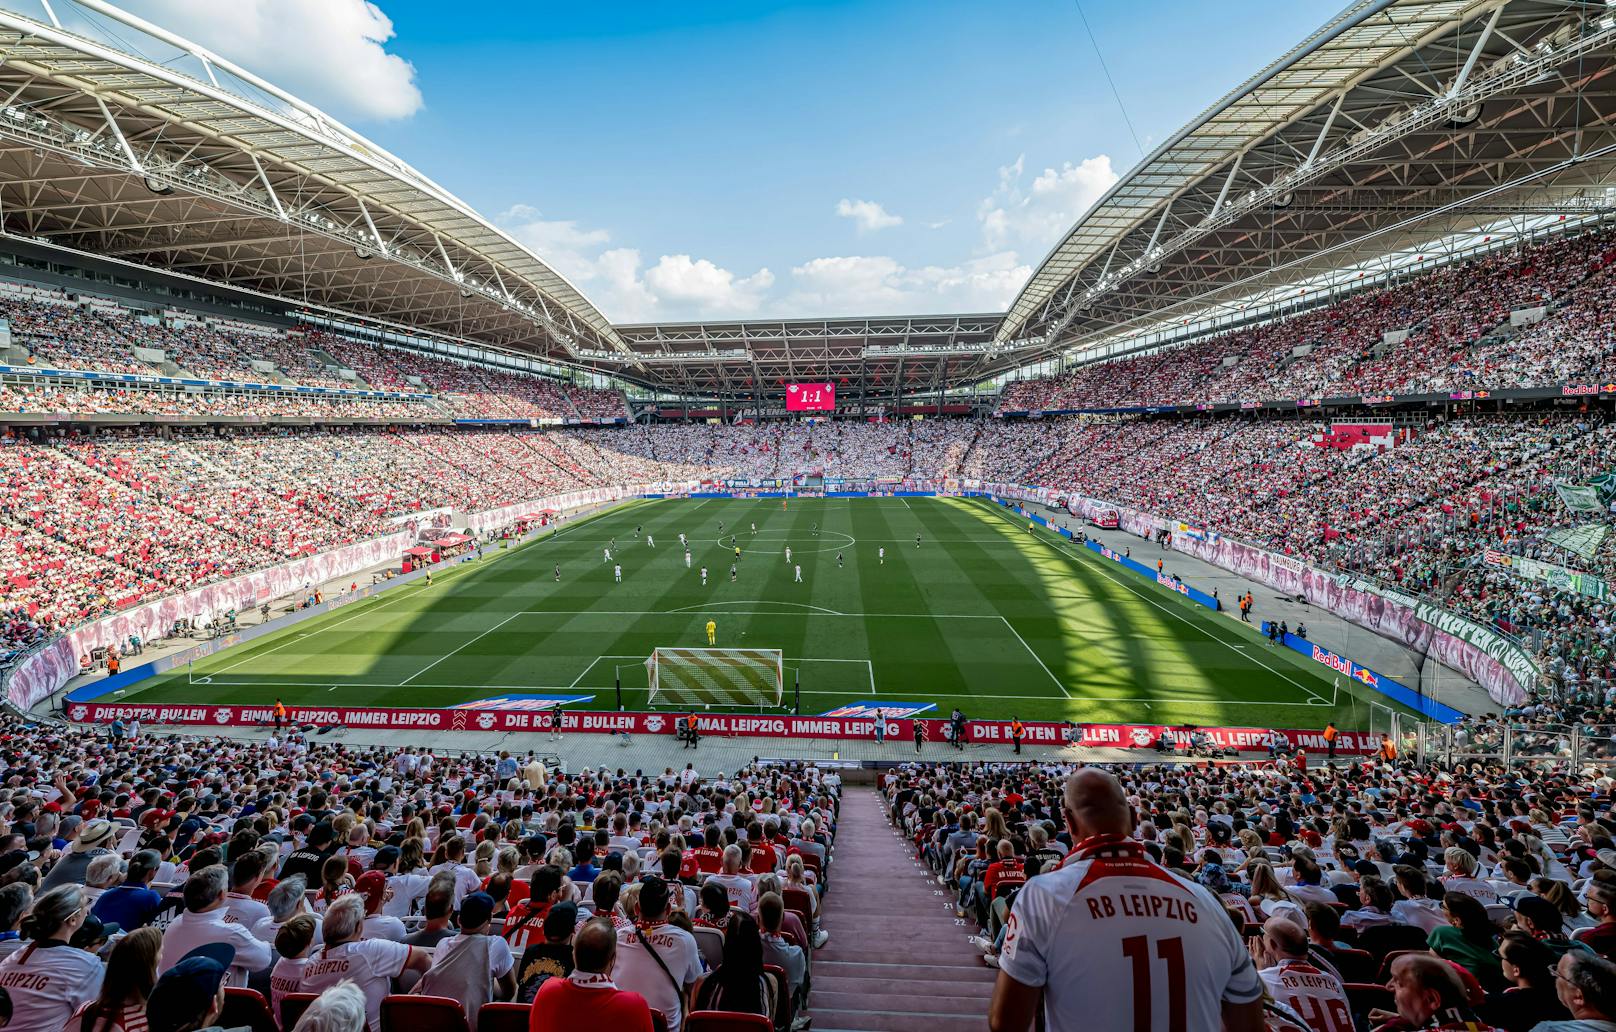 Erst seit 2011 ist das Leipzig Stadion die Heimstätte des RB Leipzig. Davor hat hier der FC Sachsen Leipzig seine Heimspiele ausgetragen. Im Stadion, das 40.000 Zuschauer fasst, werden vier Gruppenspiele und ein Viertelfinale ausgetragen.